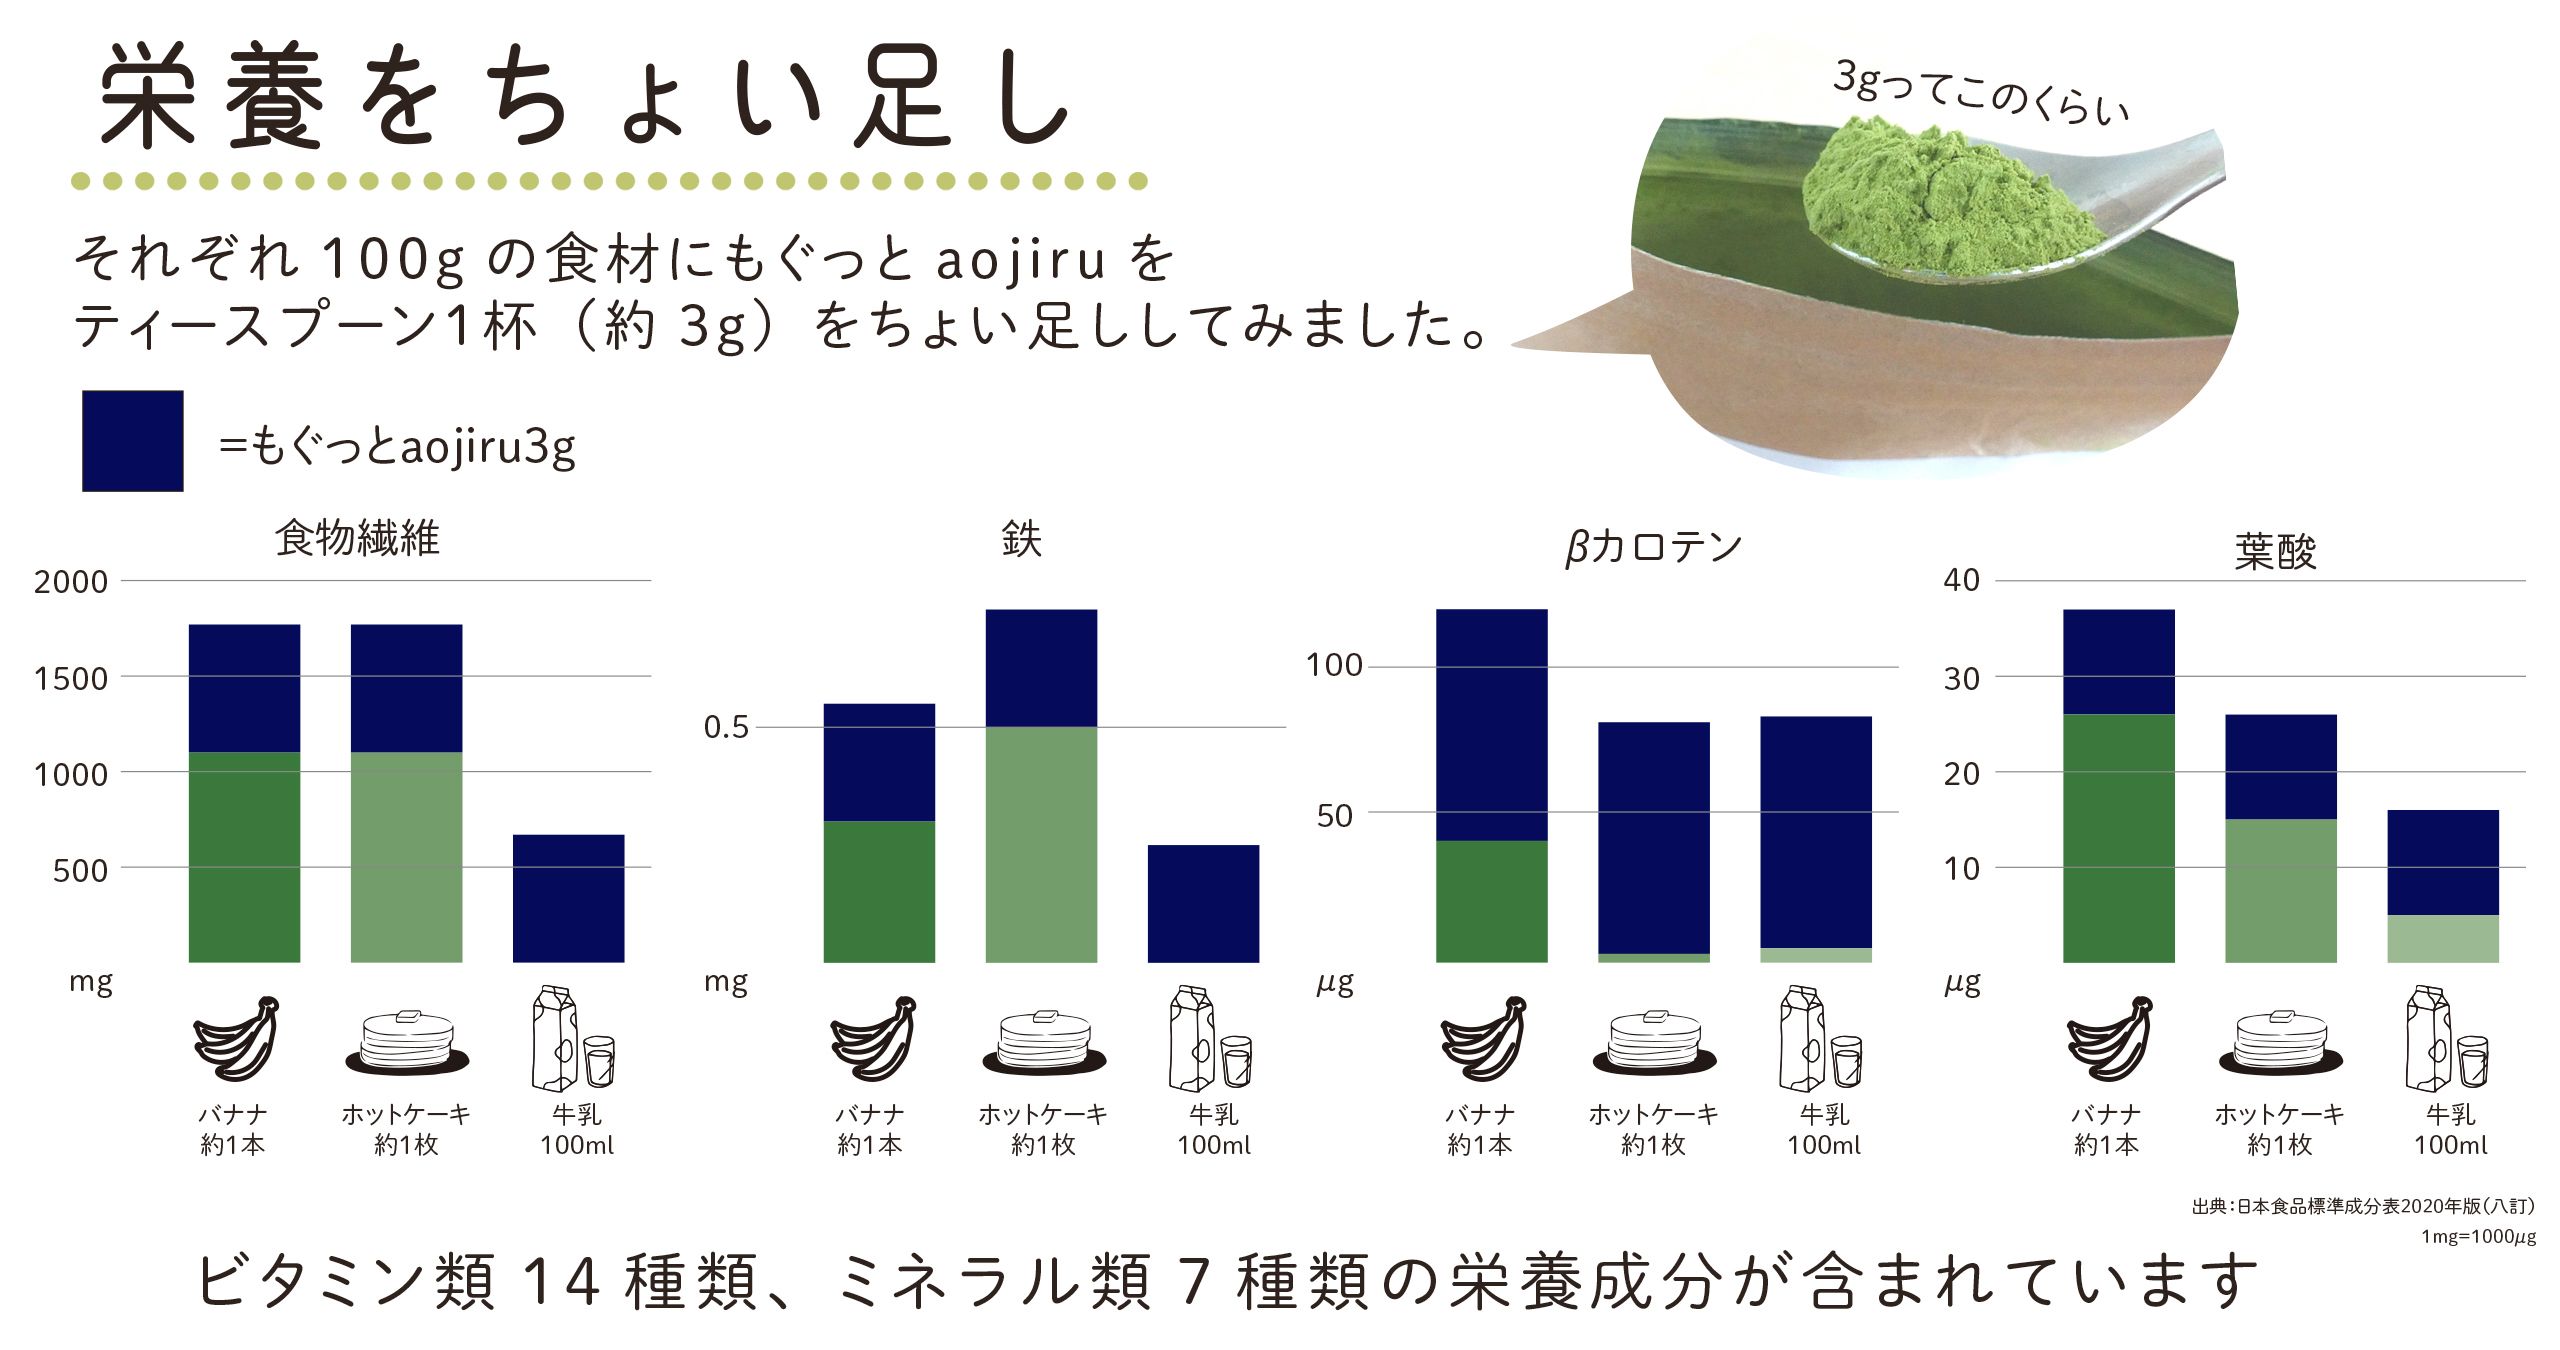 離乳食にもおすすめの青汁「もぐっとaojiru」 - b8ta Japan